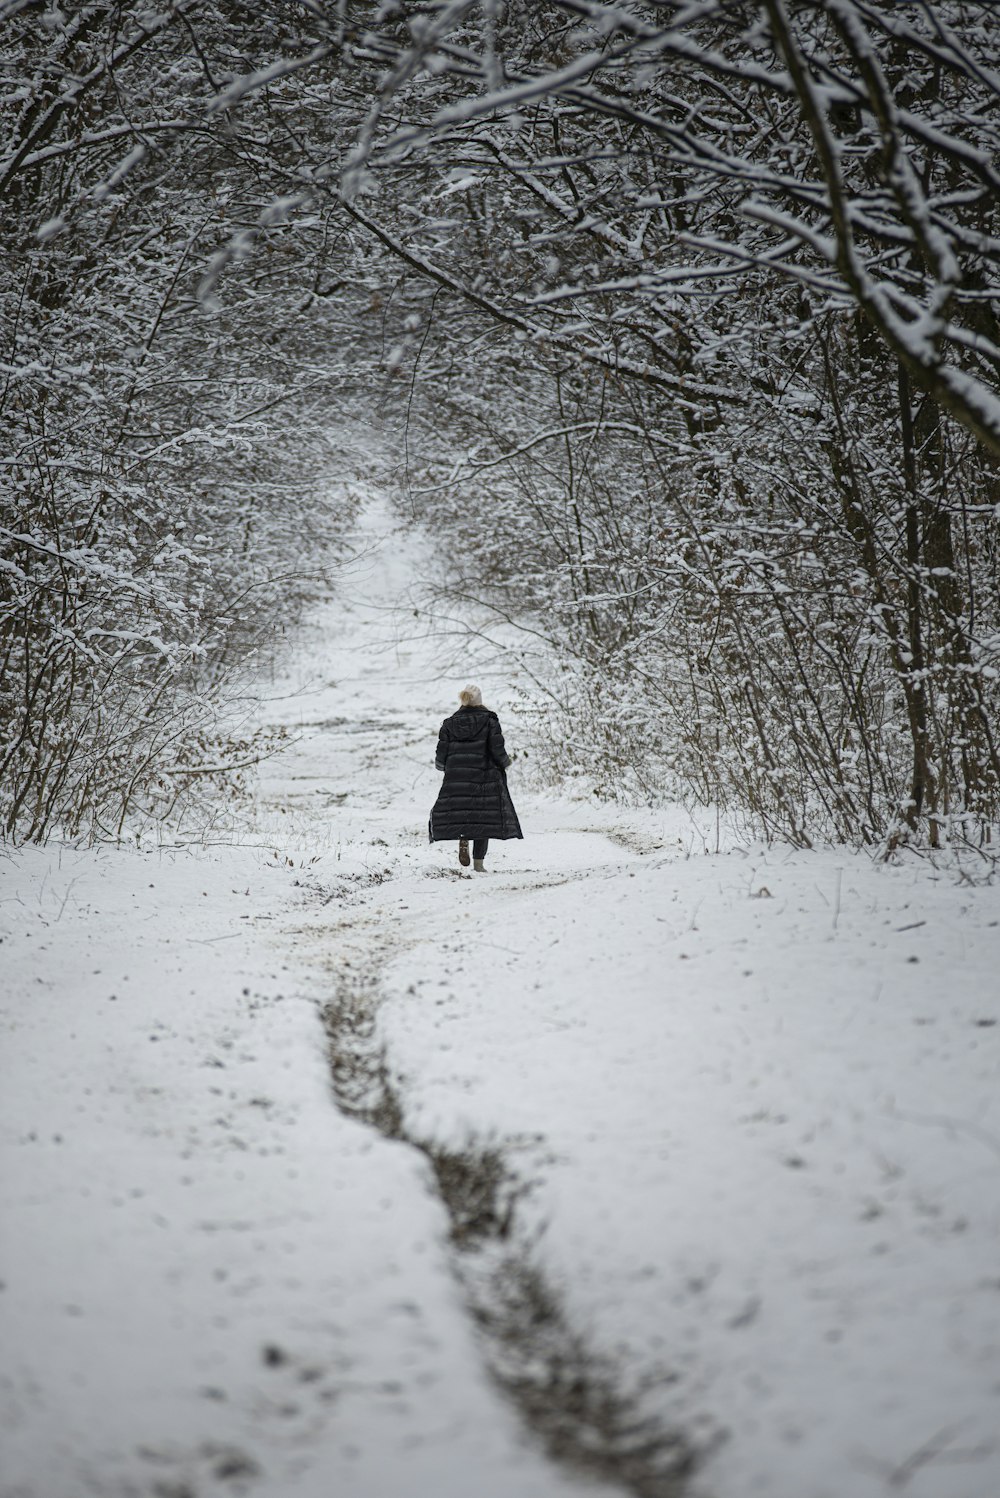 Frau im schwarzen Mantel geht tagsüber auf einem schneebedeckten Weg zwischen kahlen Bäumen